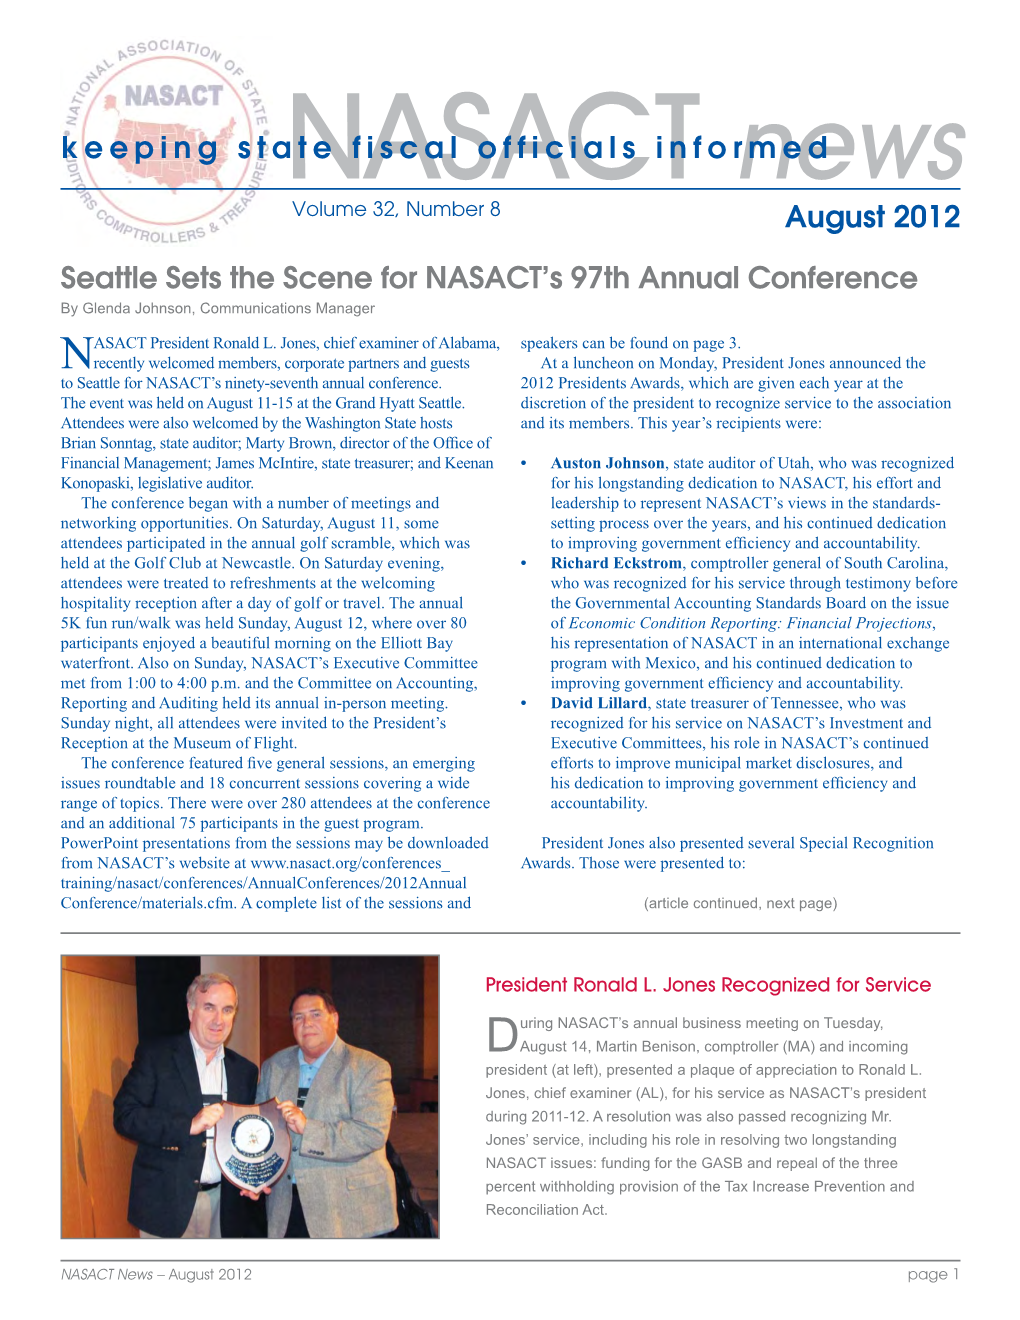 NASACT News, August 2012